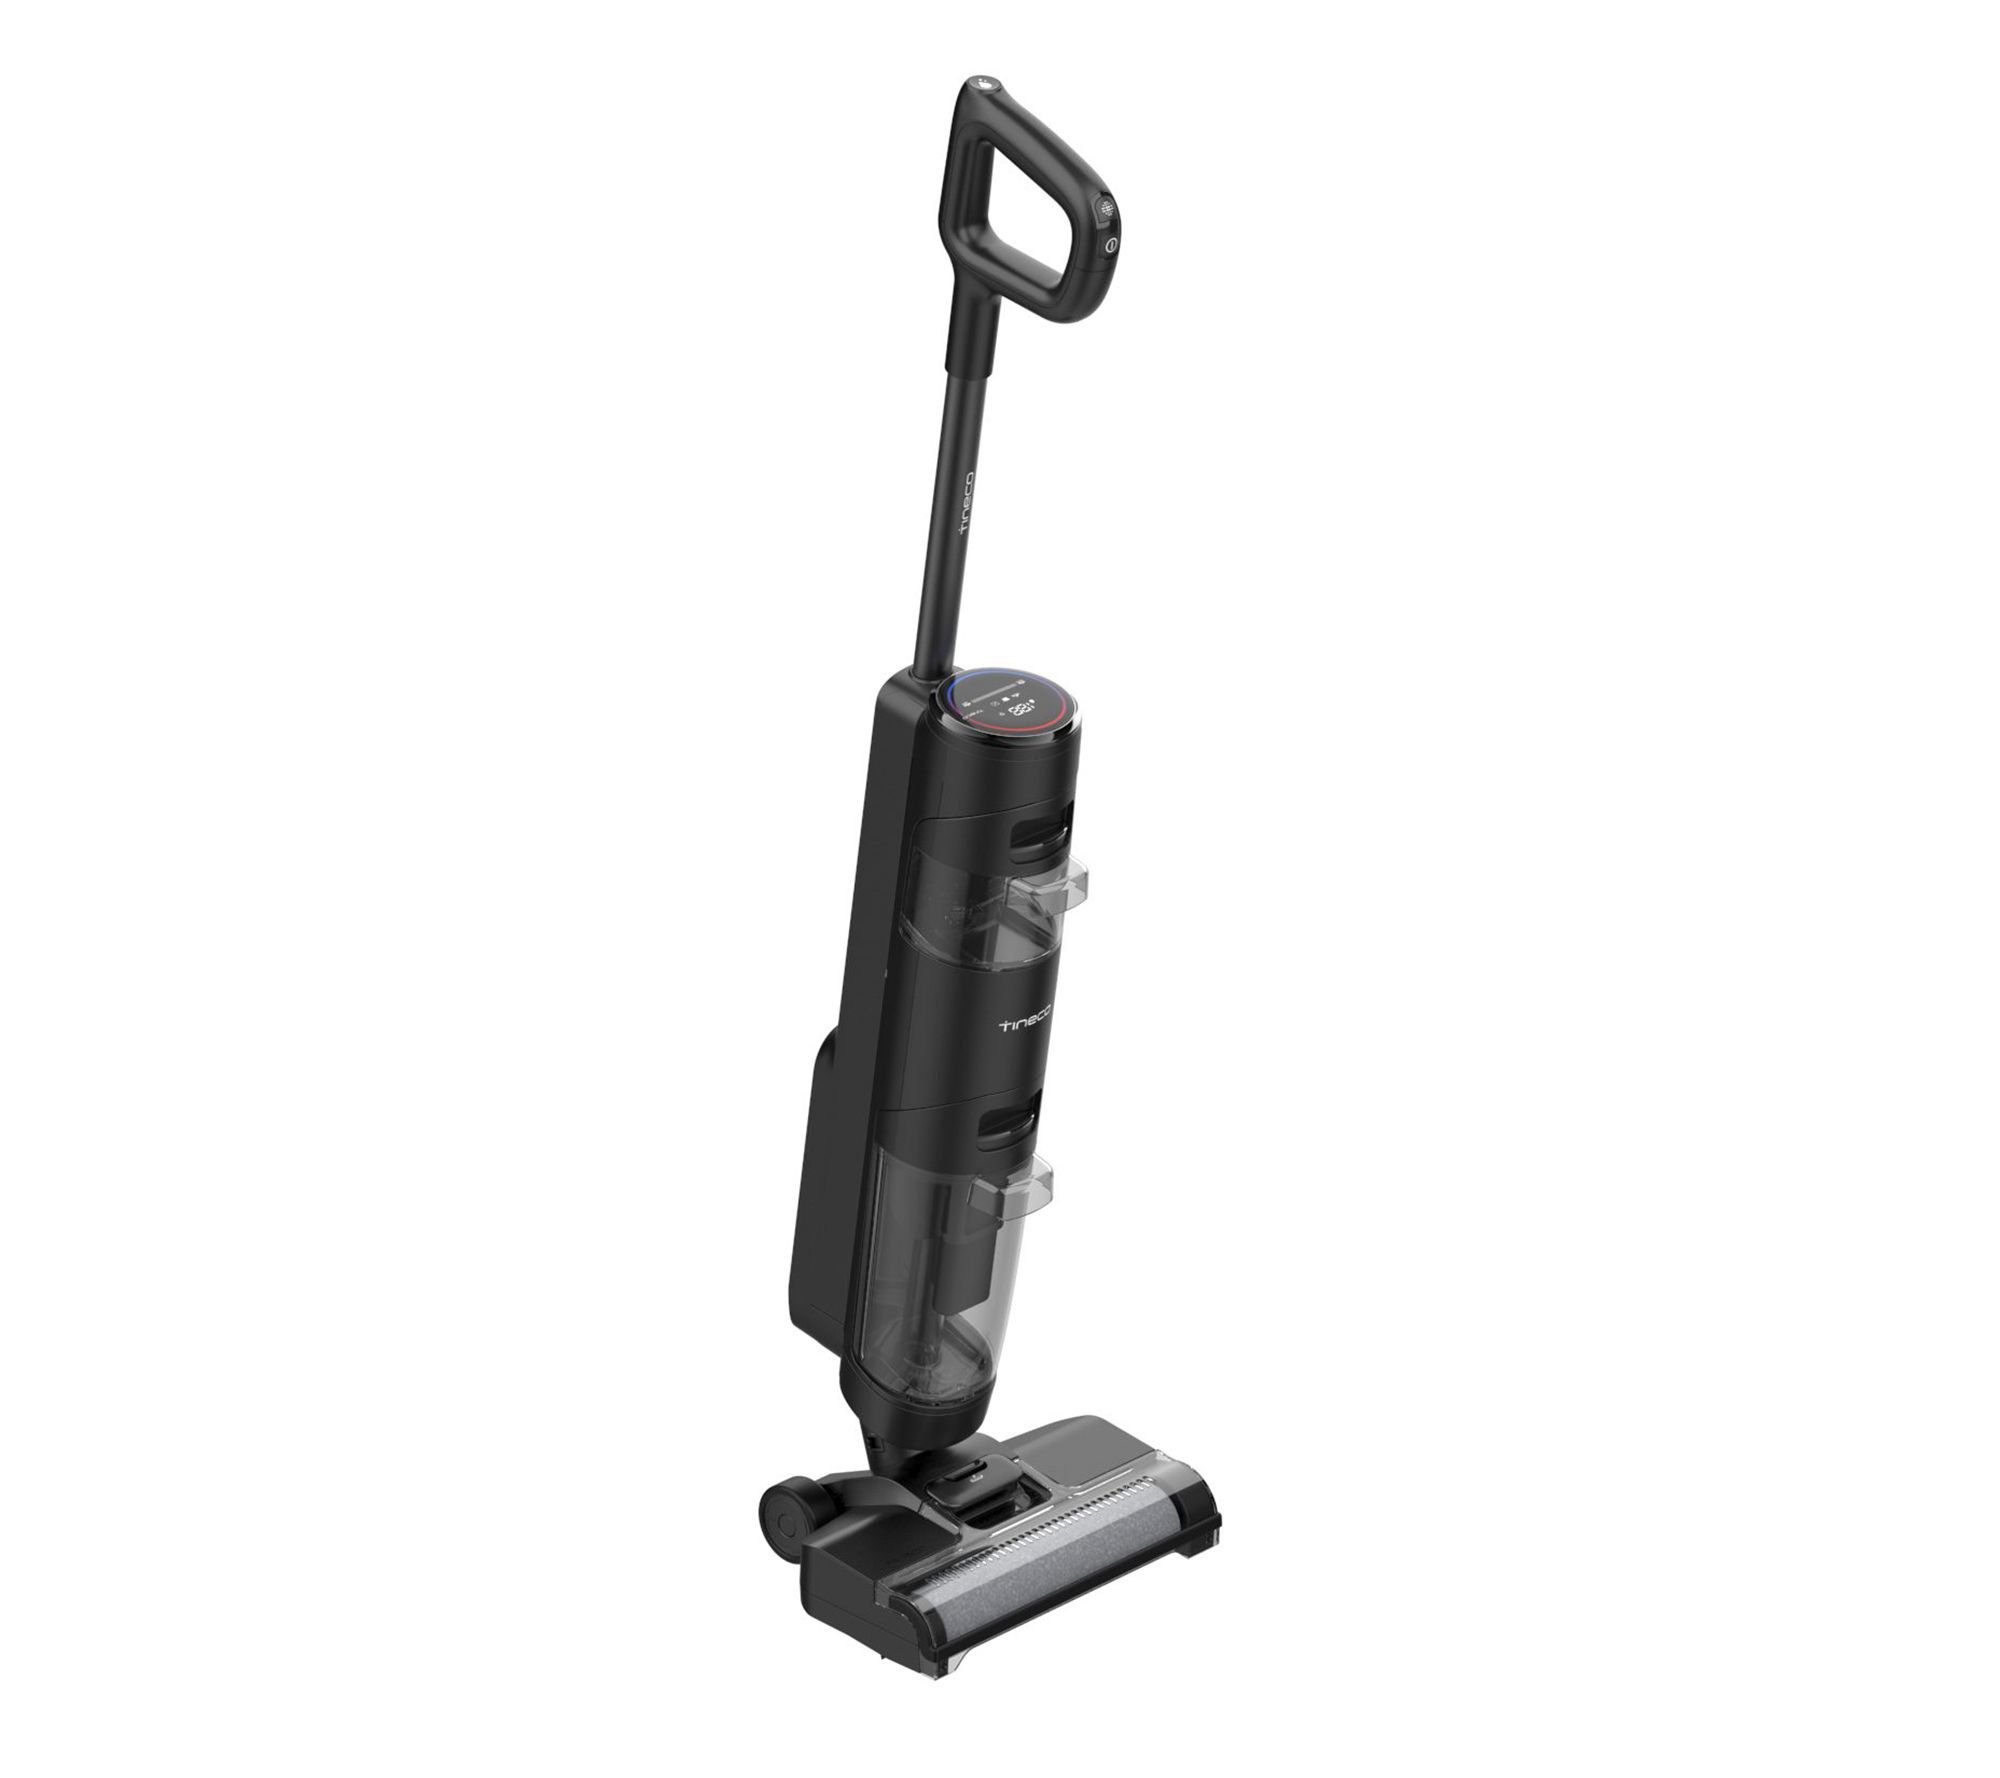 Tineco ifloor 3 - Upright Vacuum Cleaners